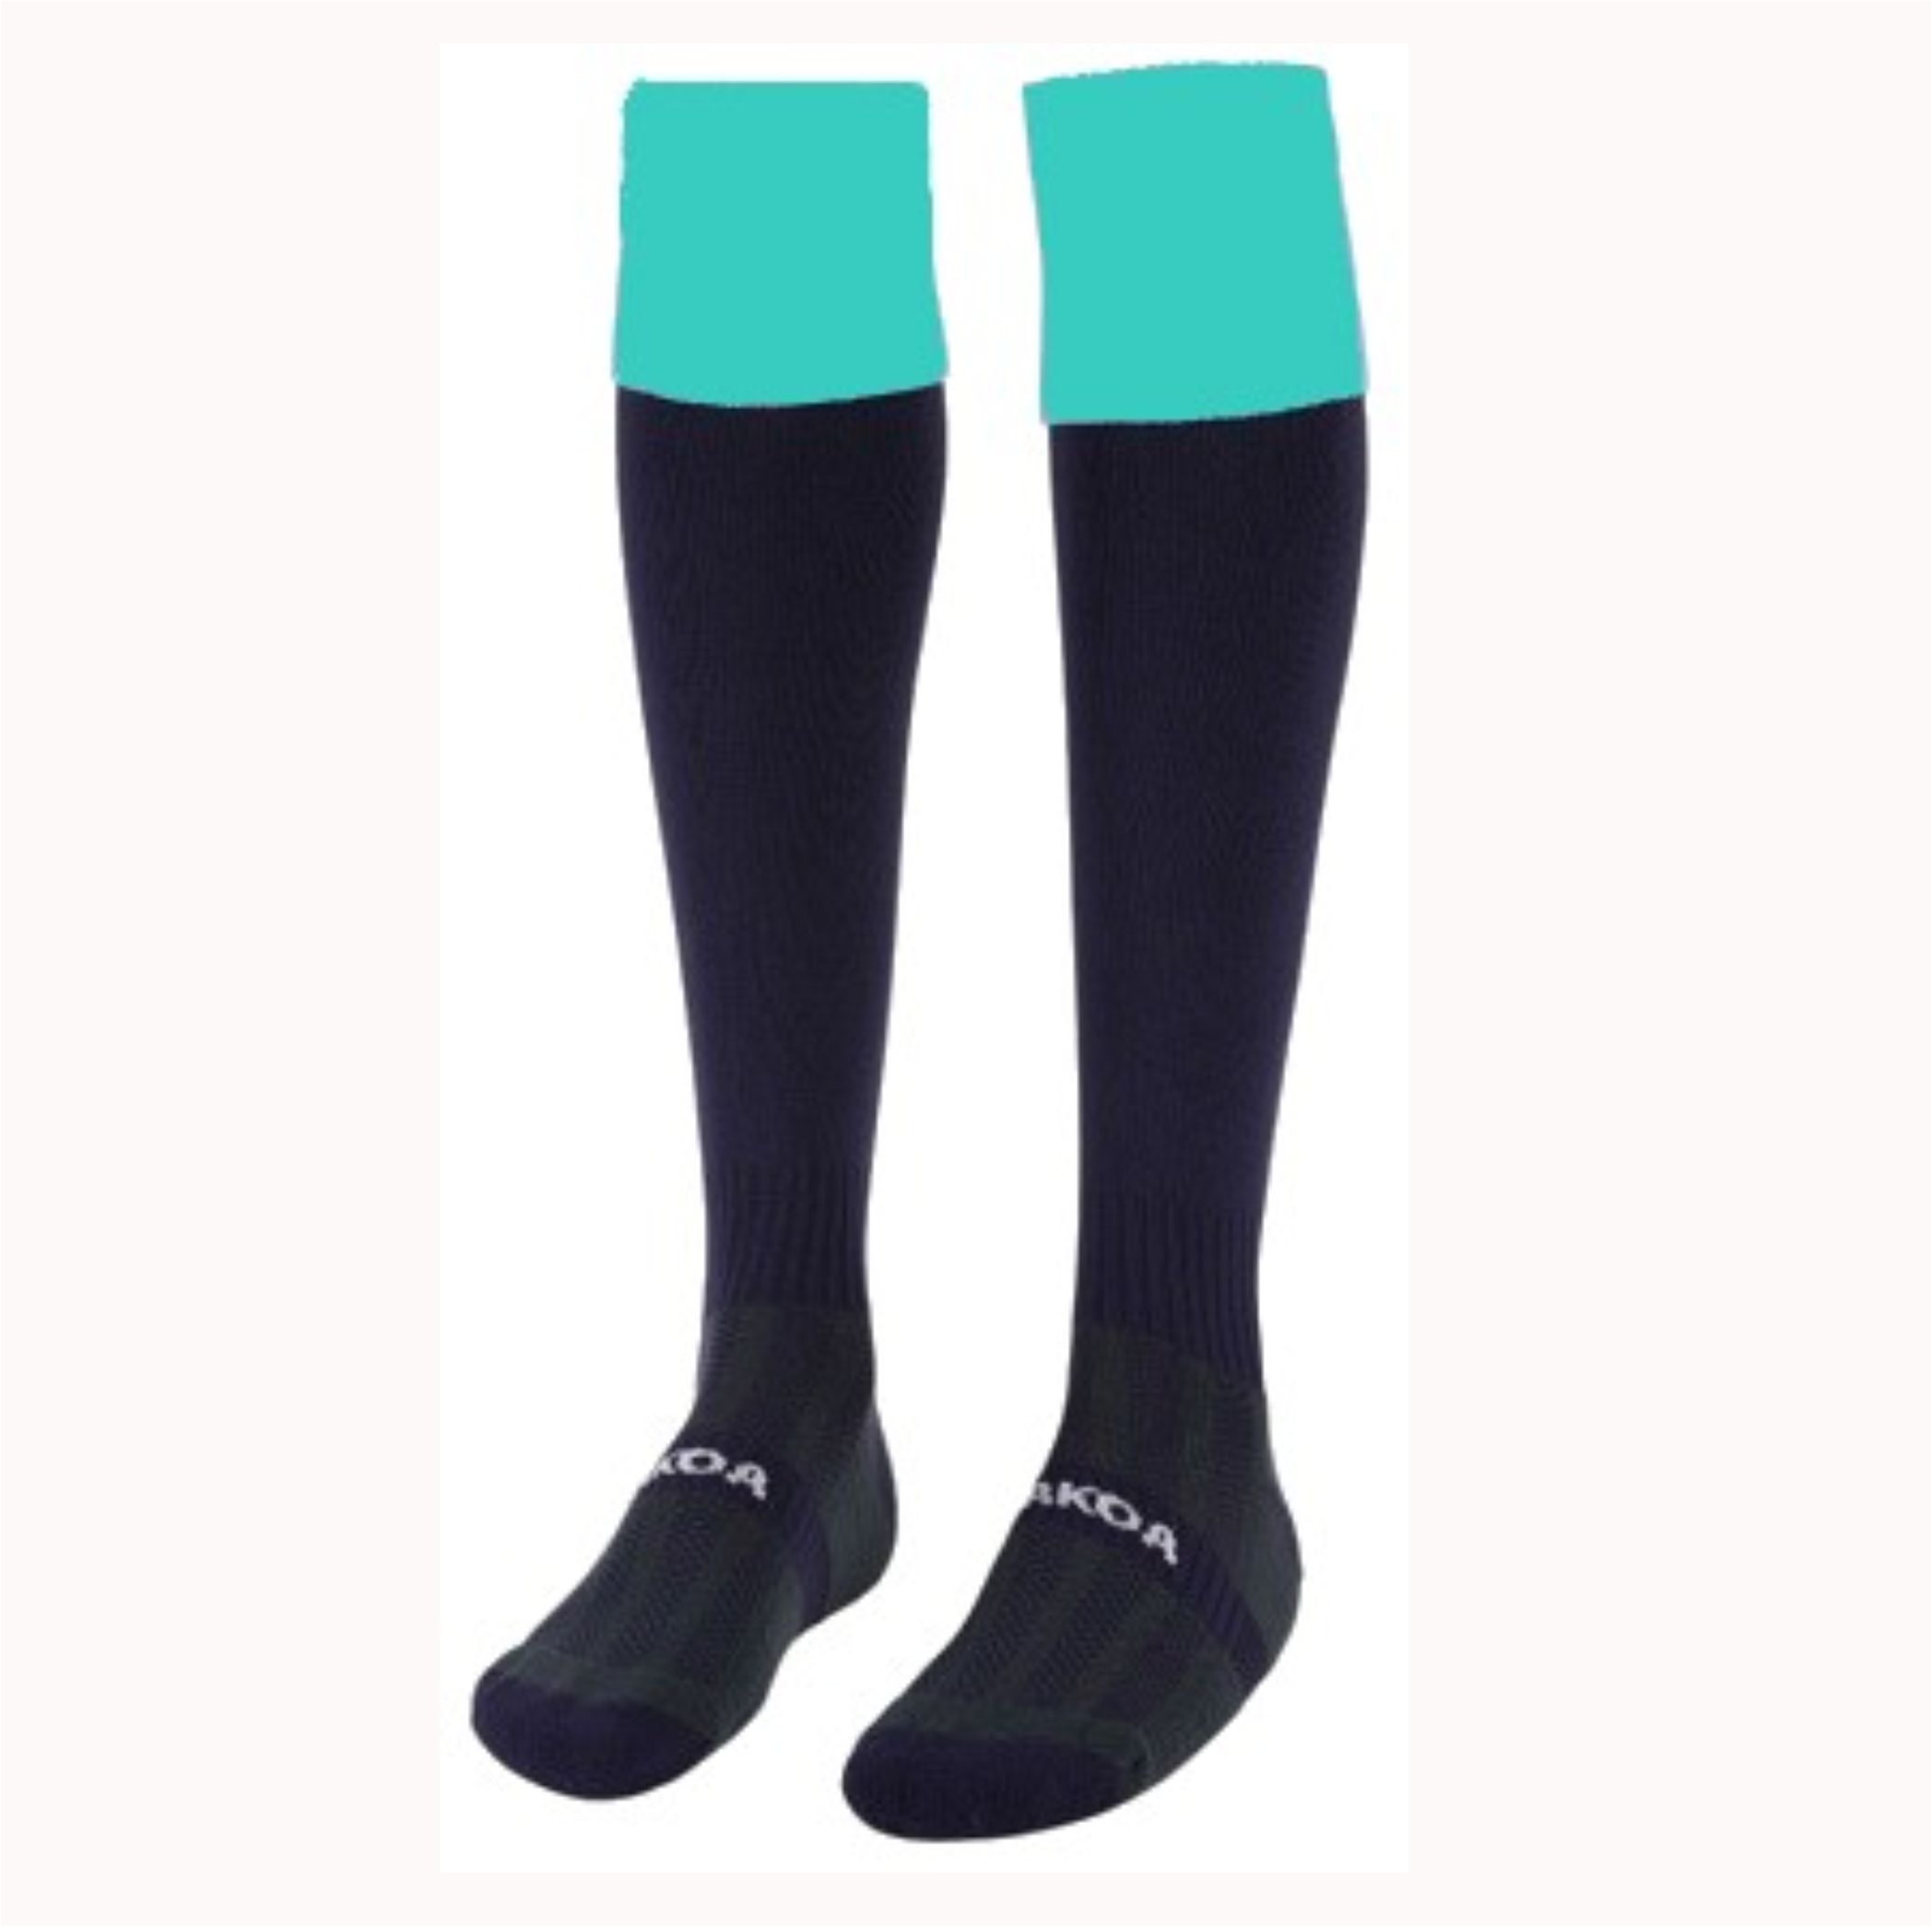 Rockwood Sport Socks – Crested School Wear